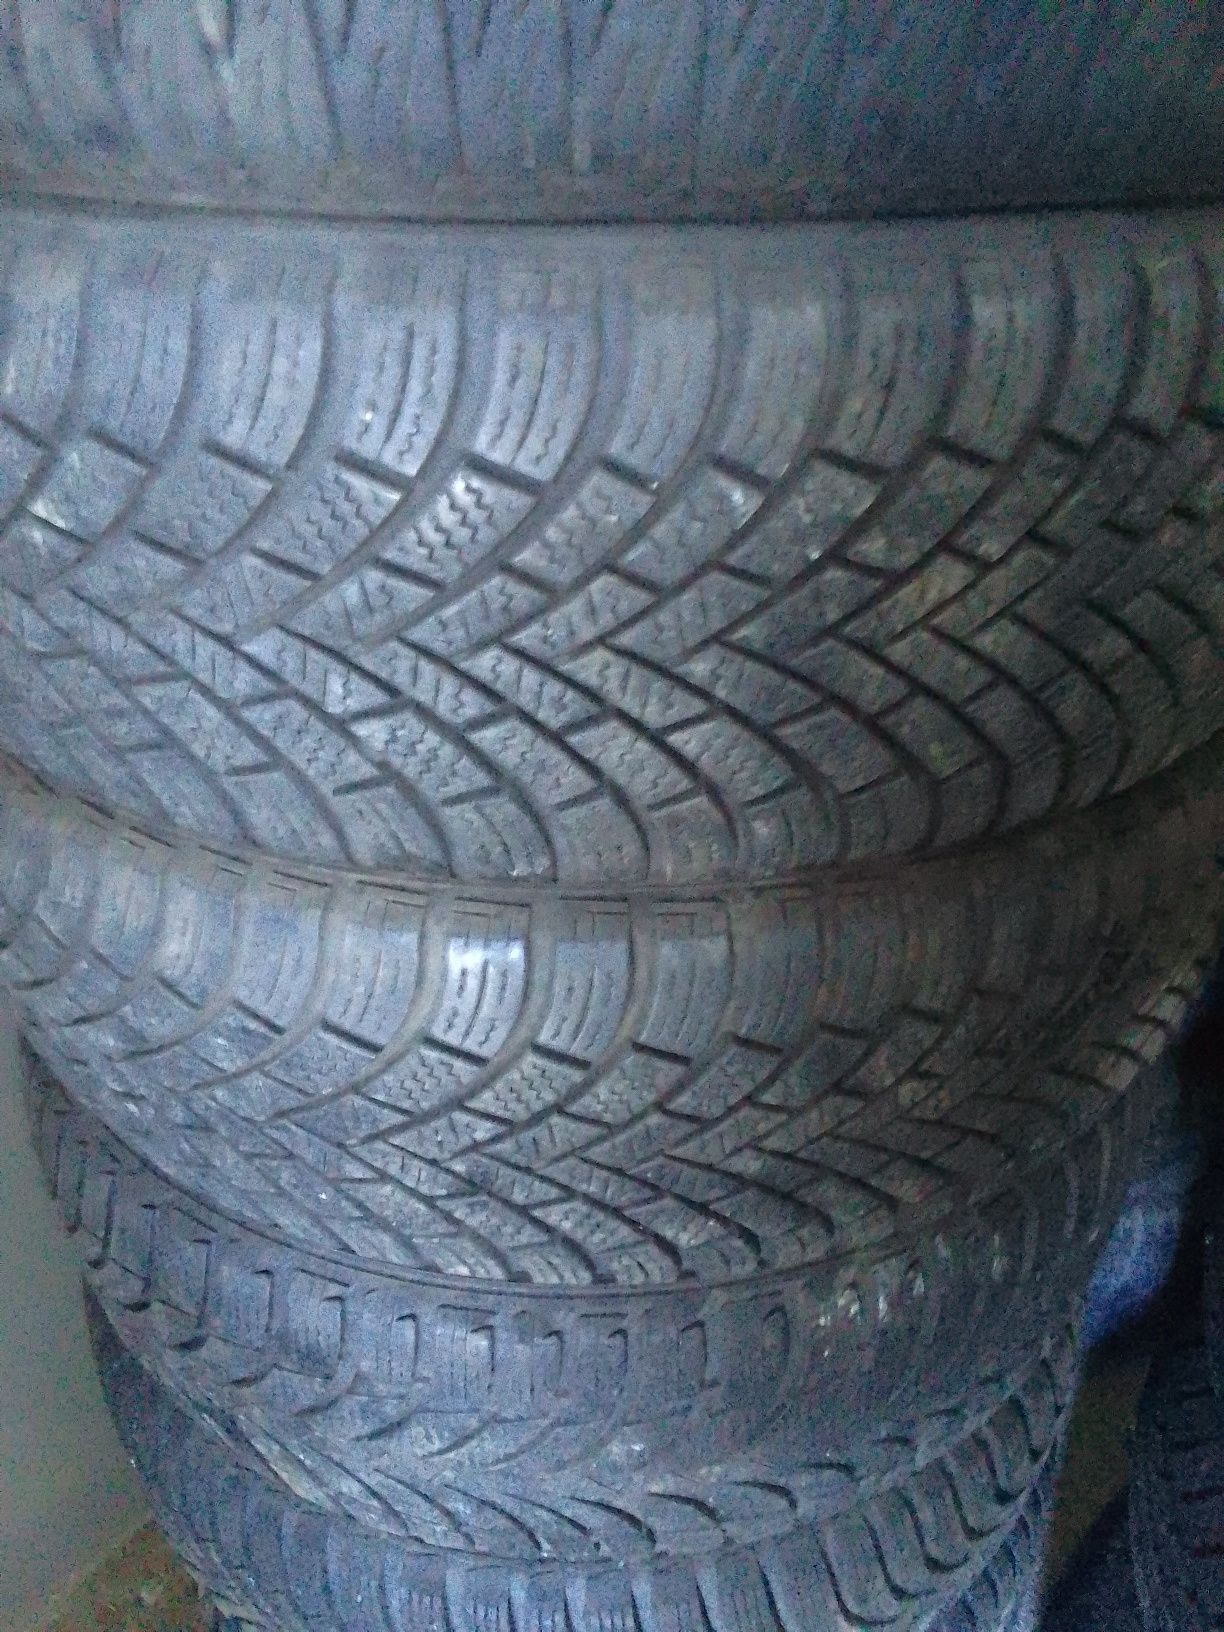 Употребявани гуми втора употреба всякакви размери зимни и летни